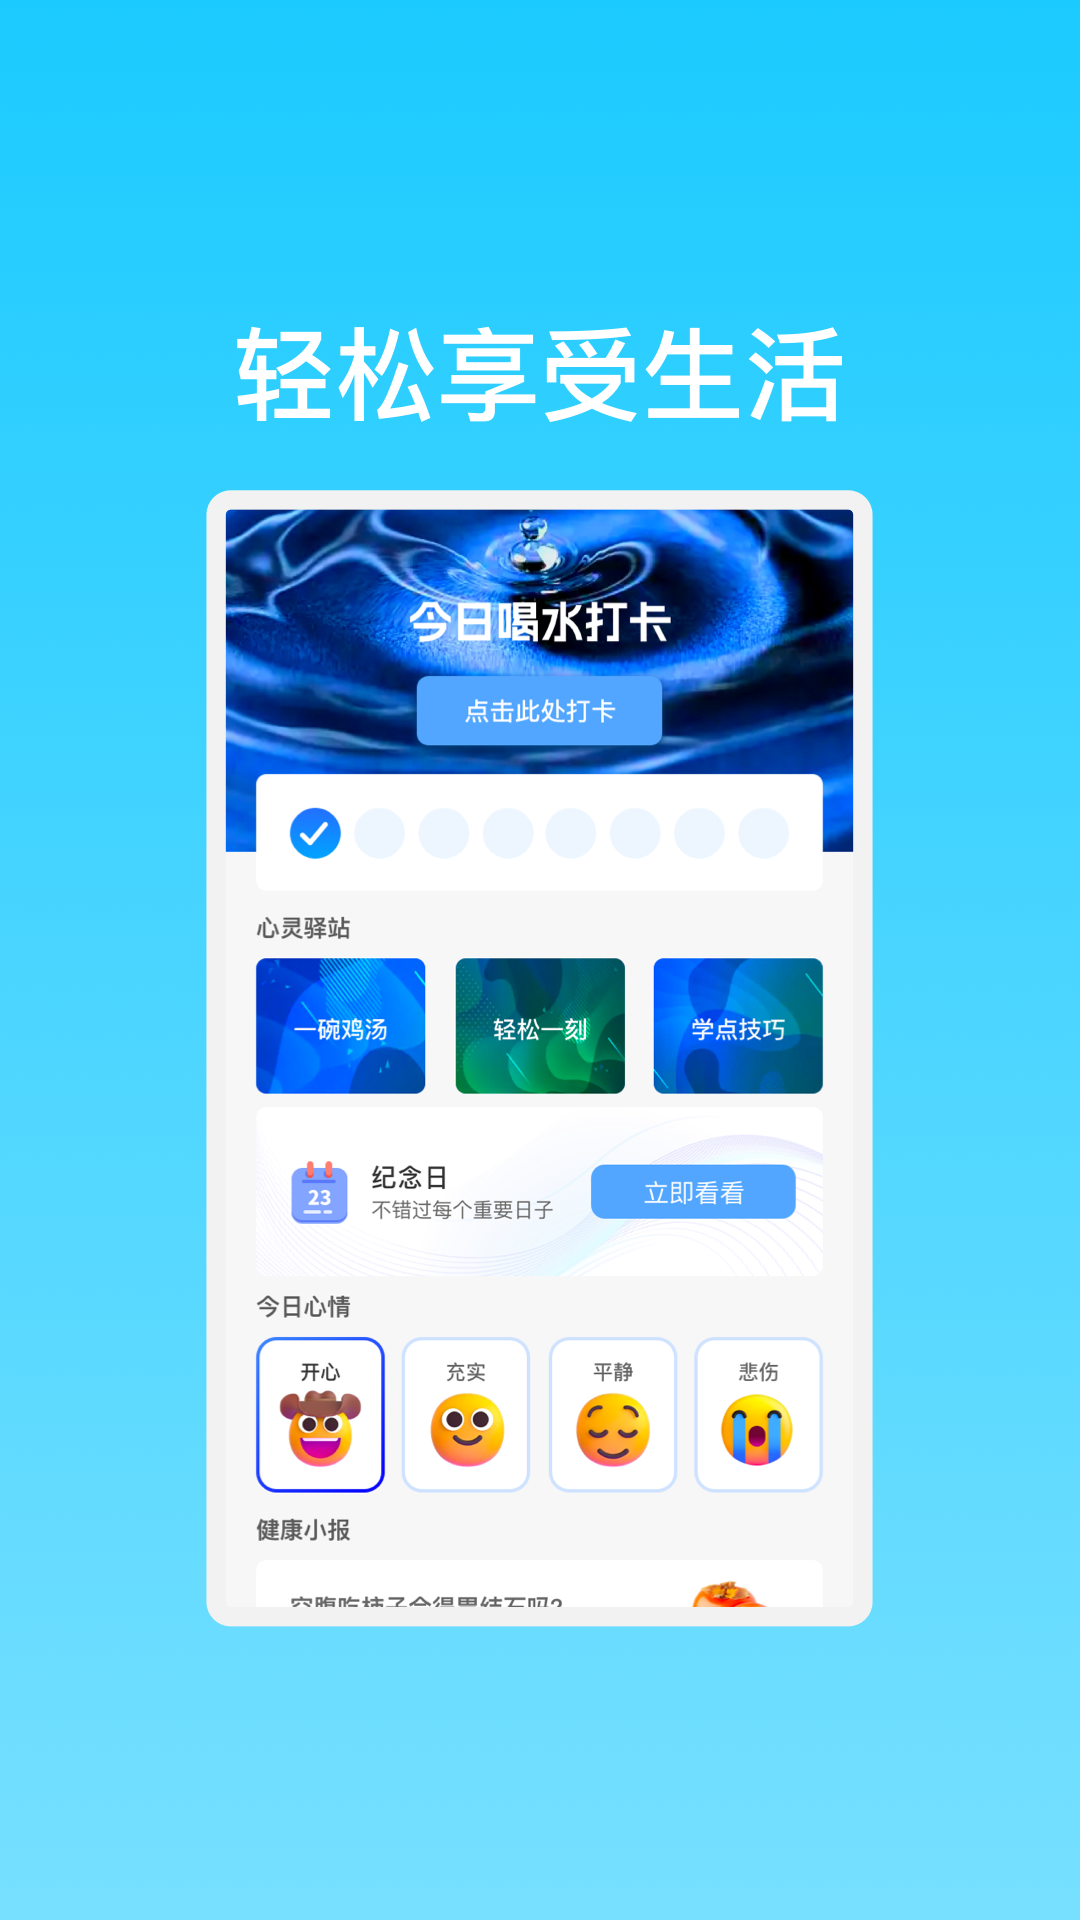 晨曦高速WiFi网络软件官方版图片1